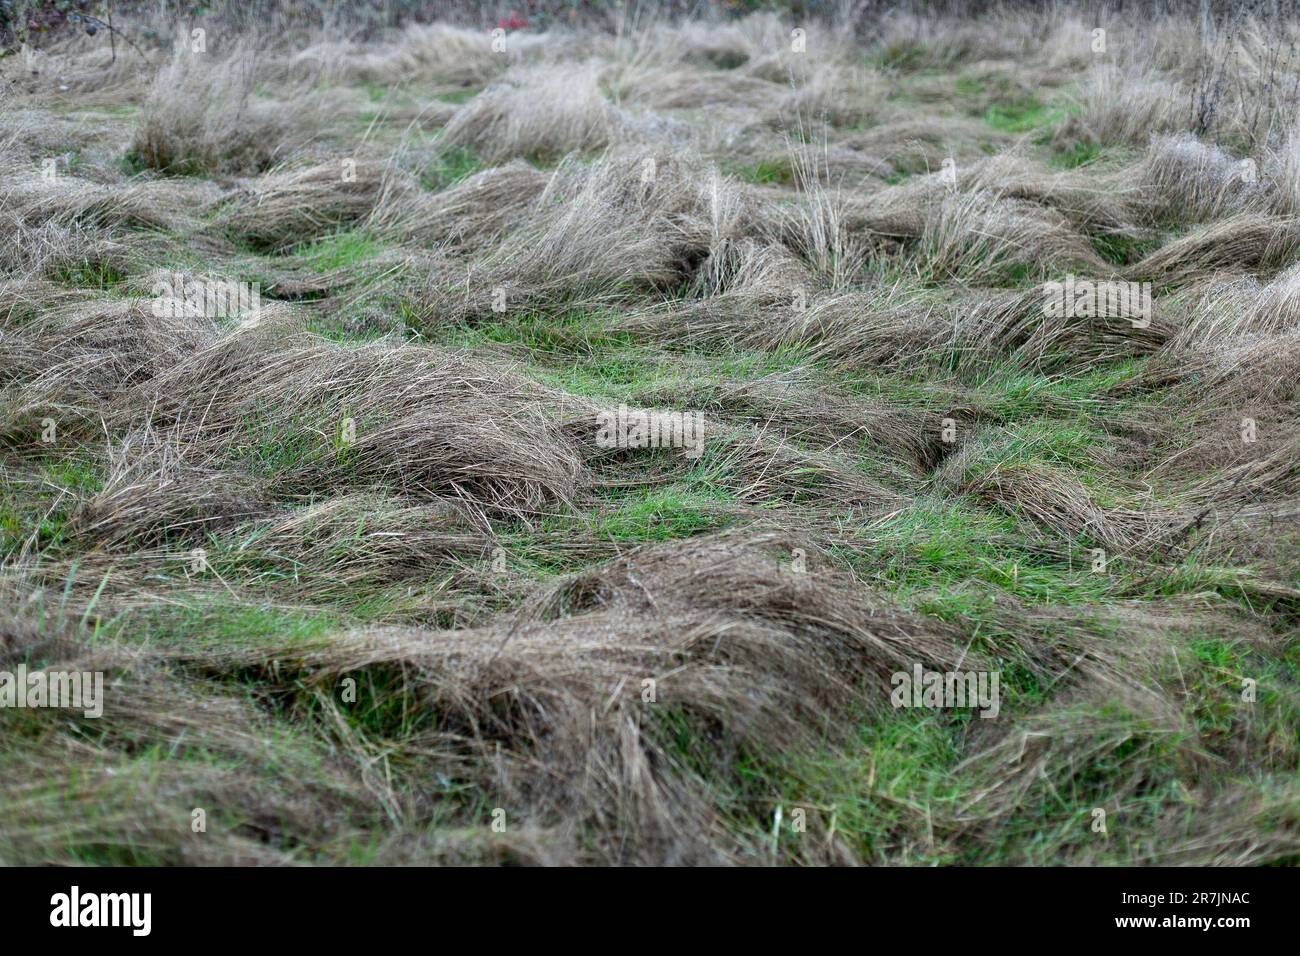 De grandes herbes de médow soufflent et deviennent brunes avec le froid d'hiver à Vancouver, Washington. Banque D'Images